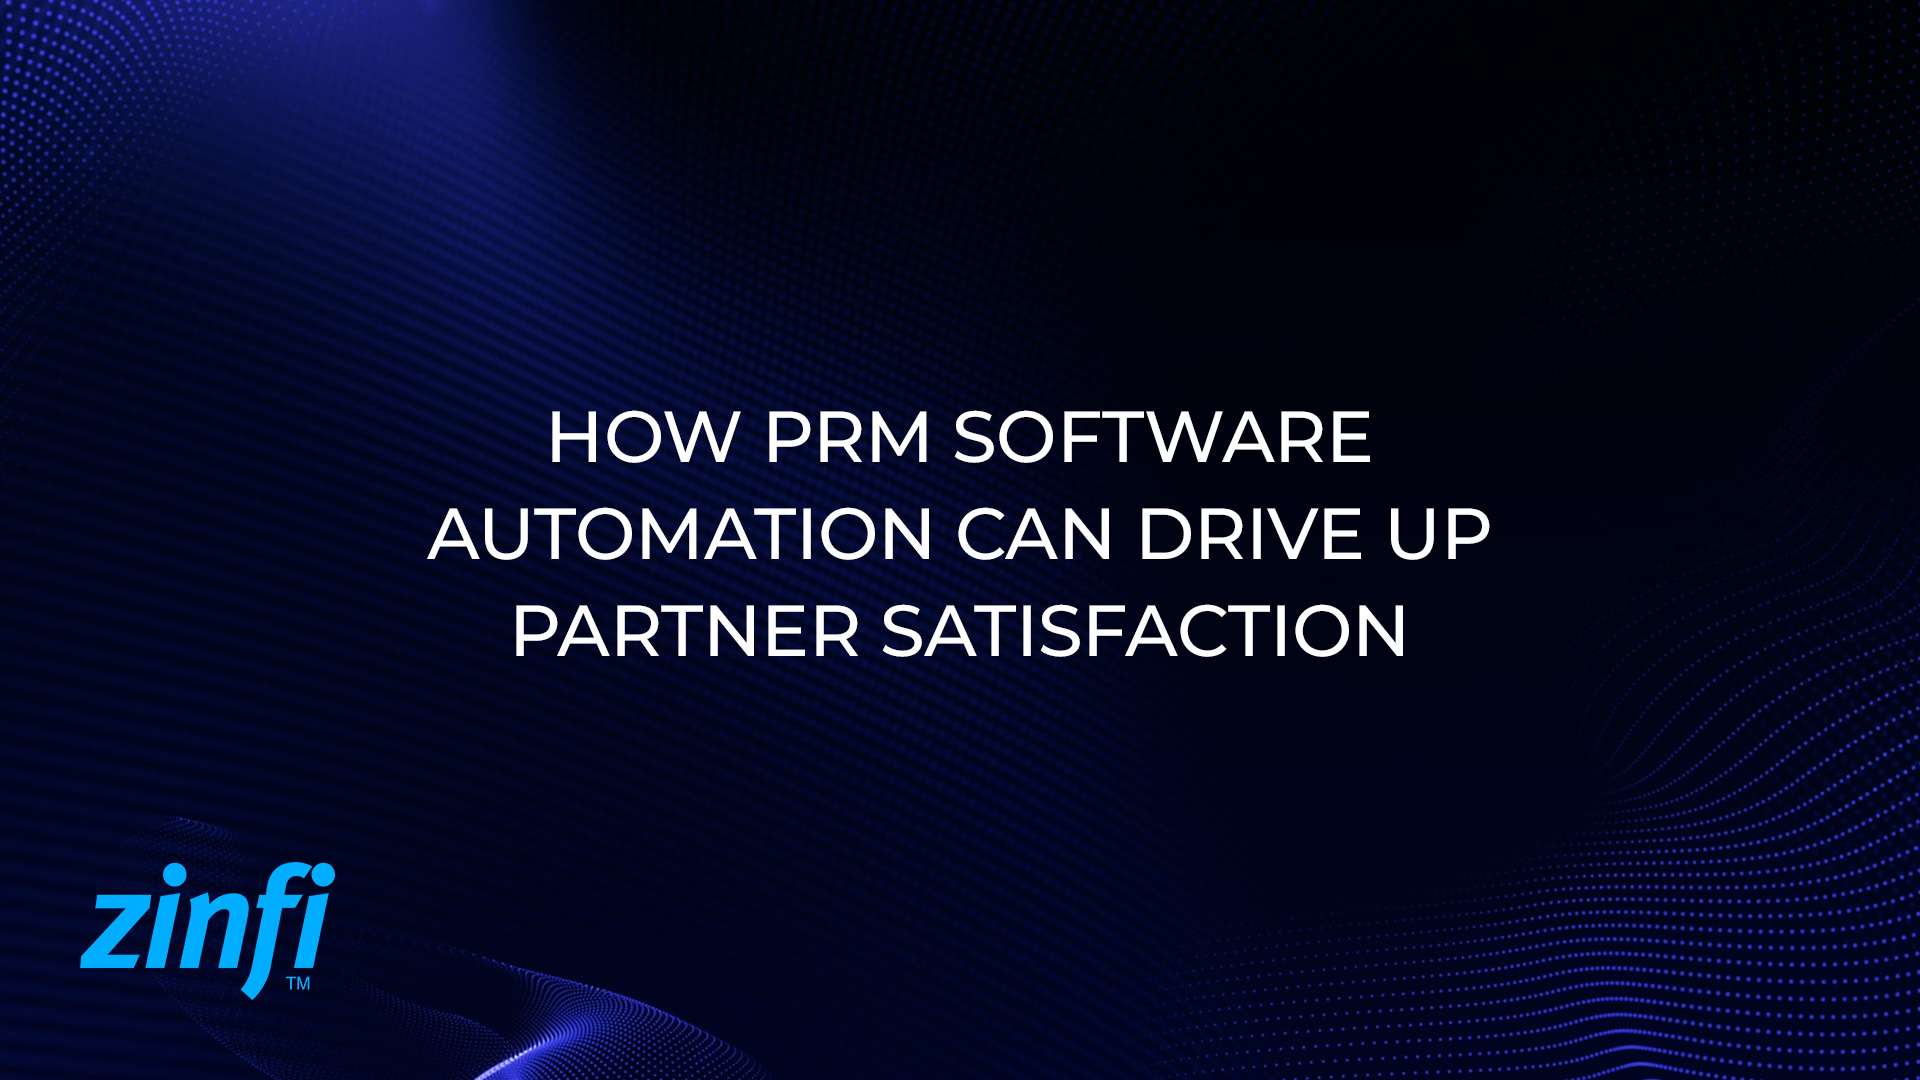 PRM Software Automation